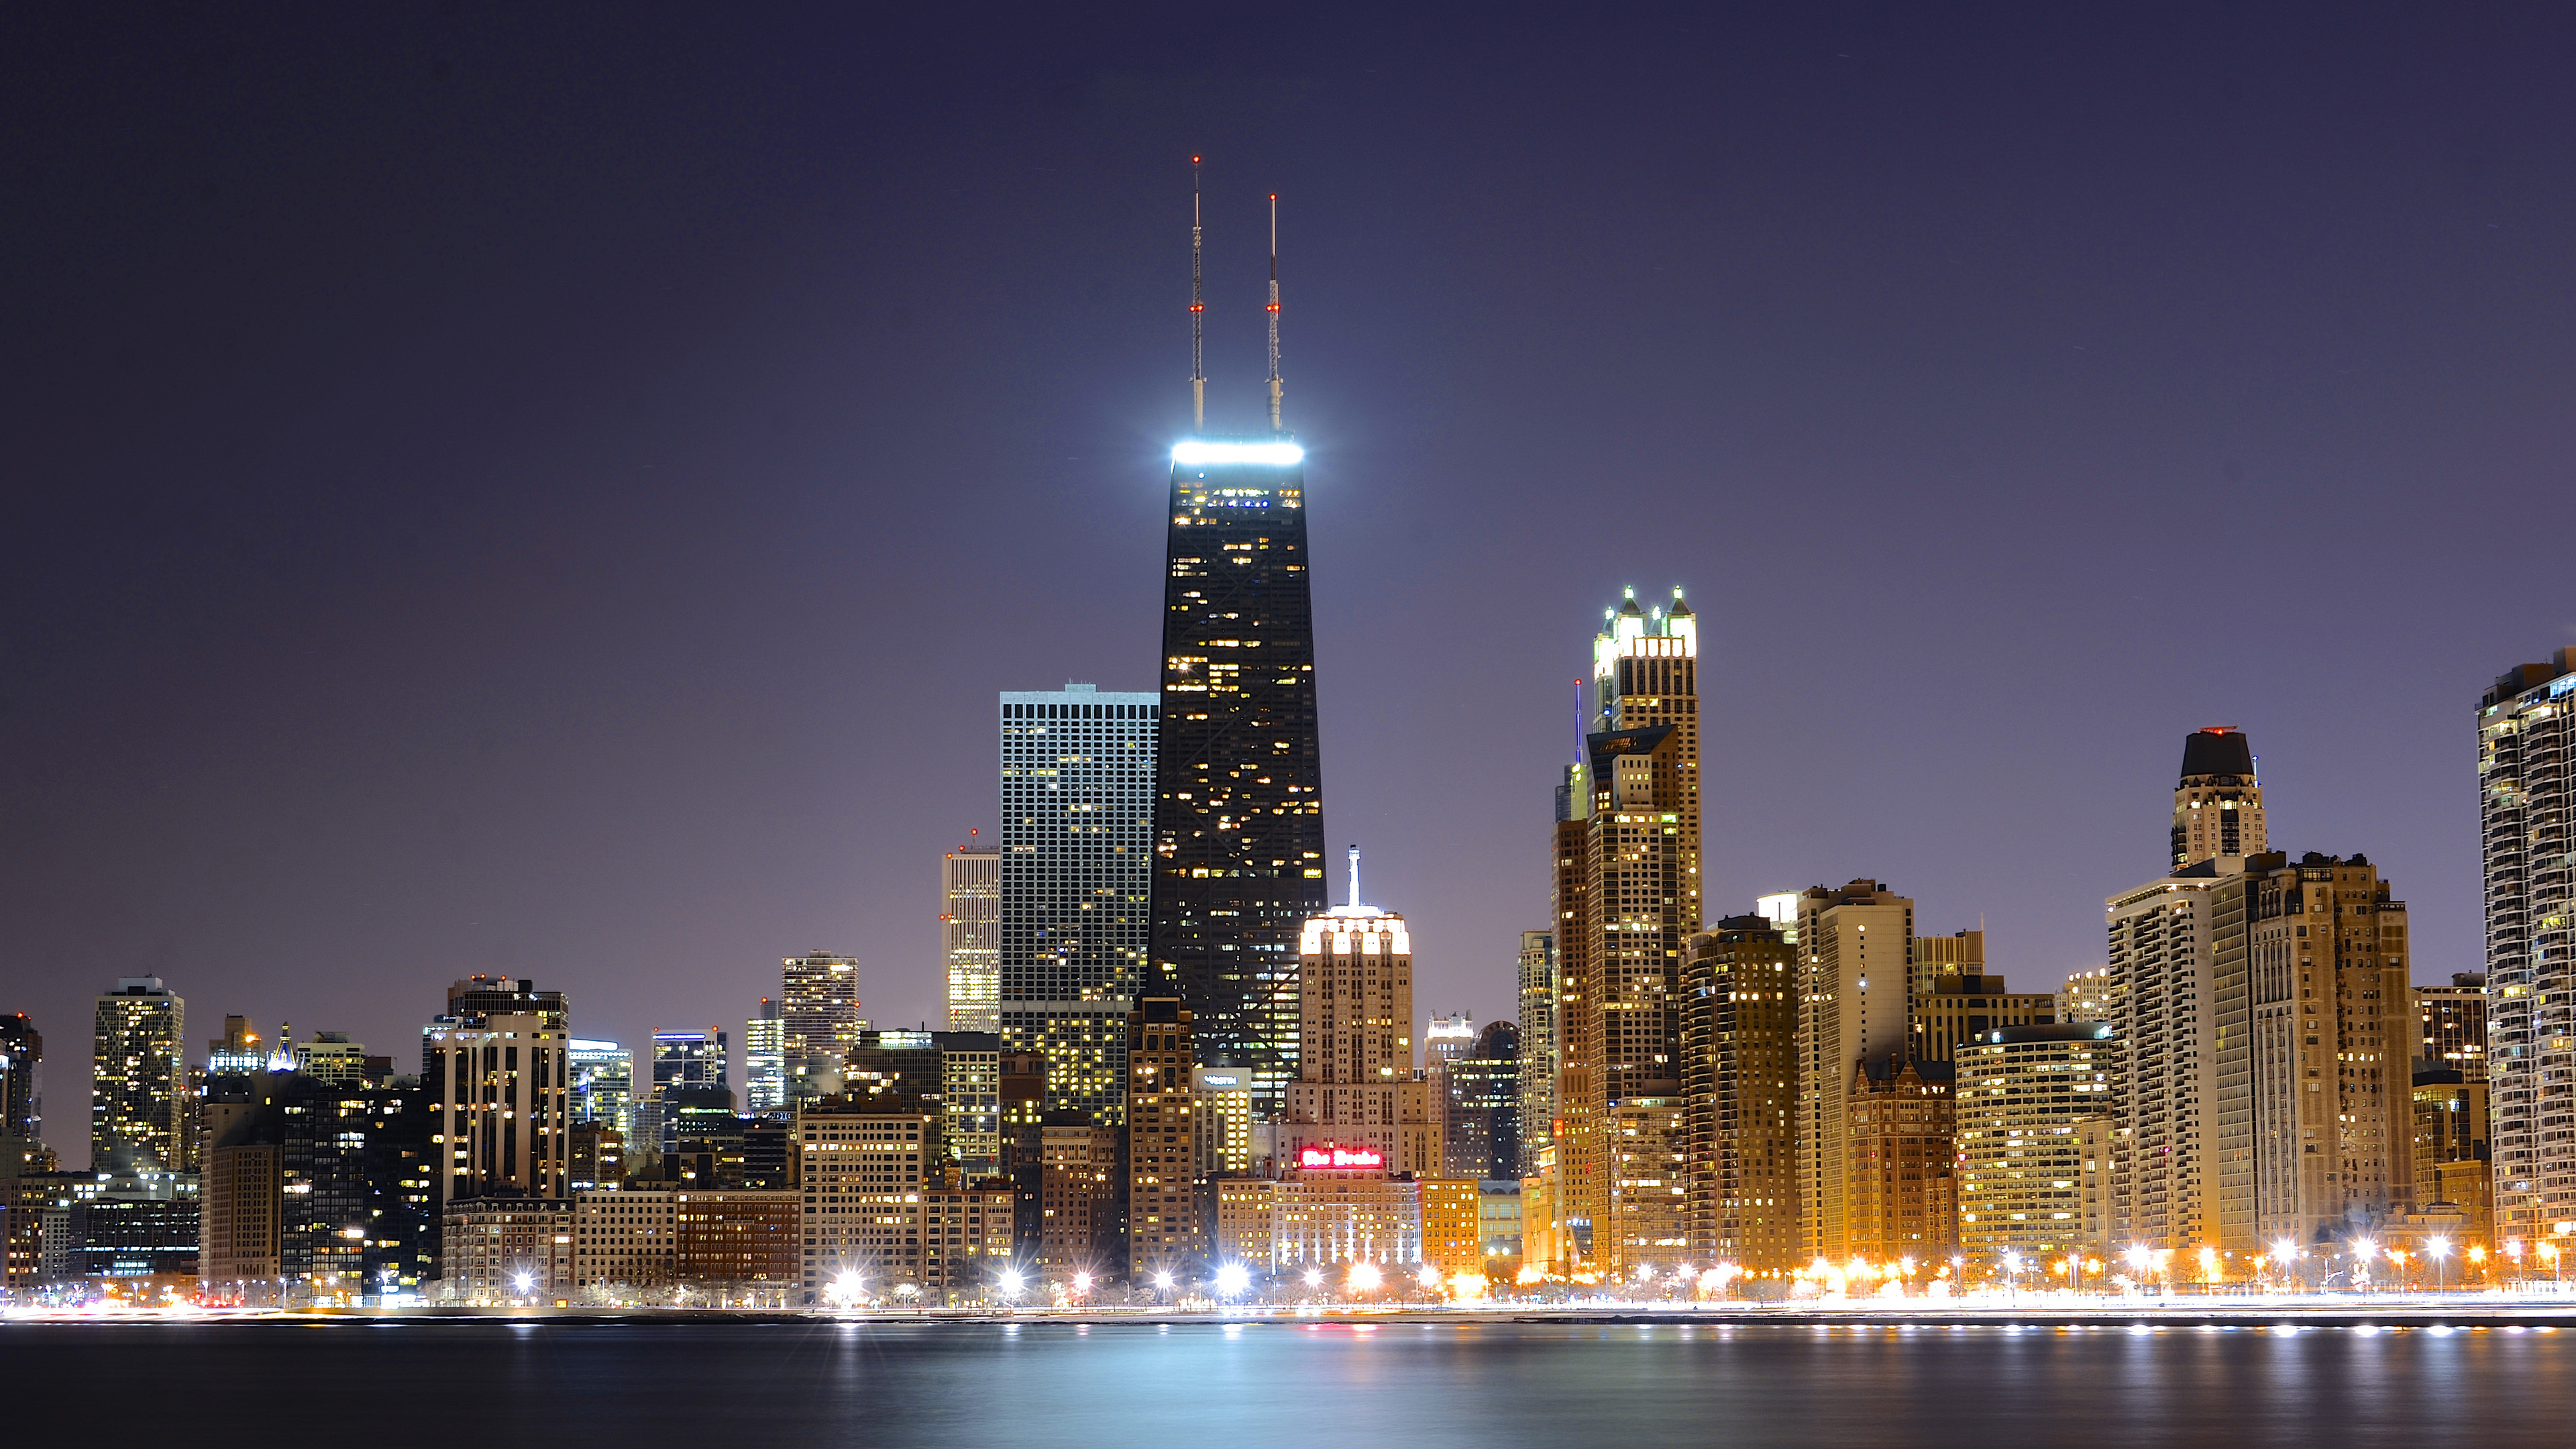 Chicago: Cityscape, Illinois, Willis Tower, Sears Tower, Skyscraper. 3840x2160 4K Wallpaper.